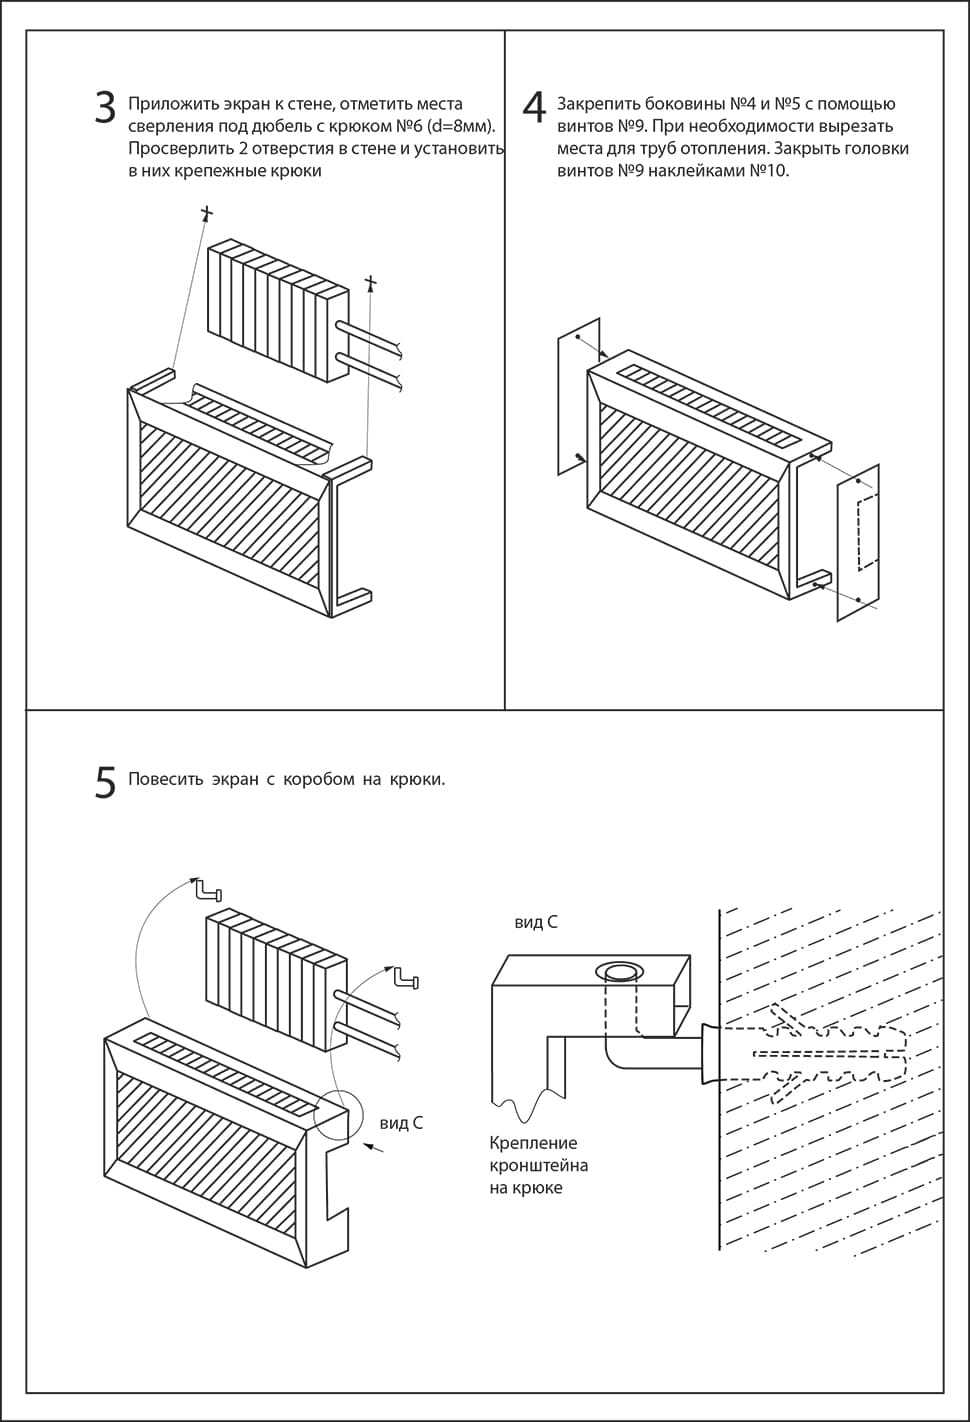 Решетки (экраны) на радиаторы отопления: как выбрать и установить